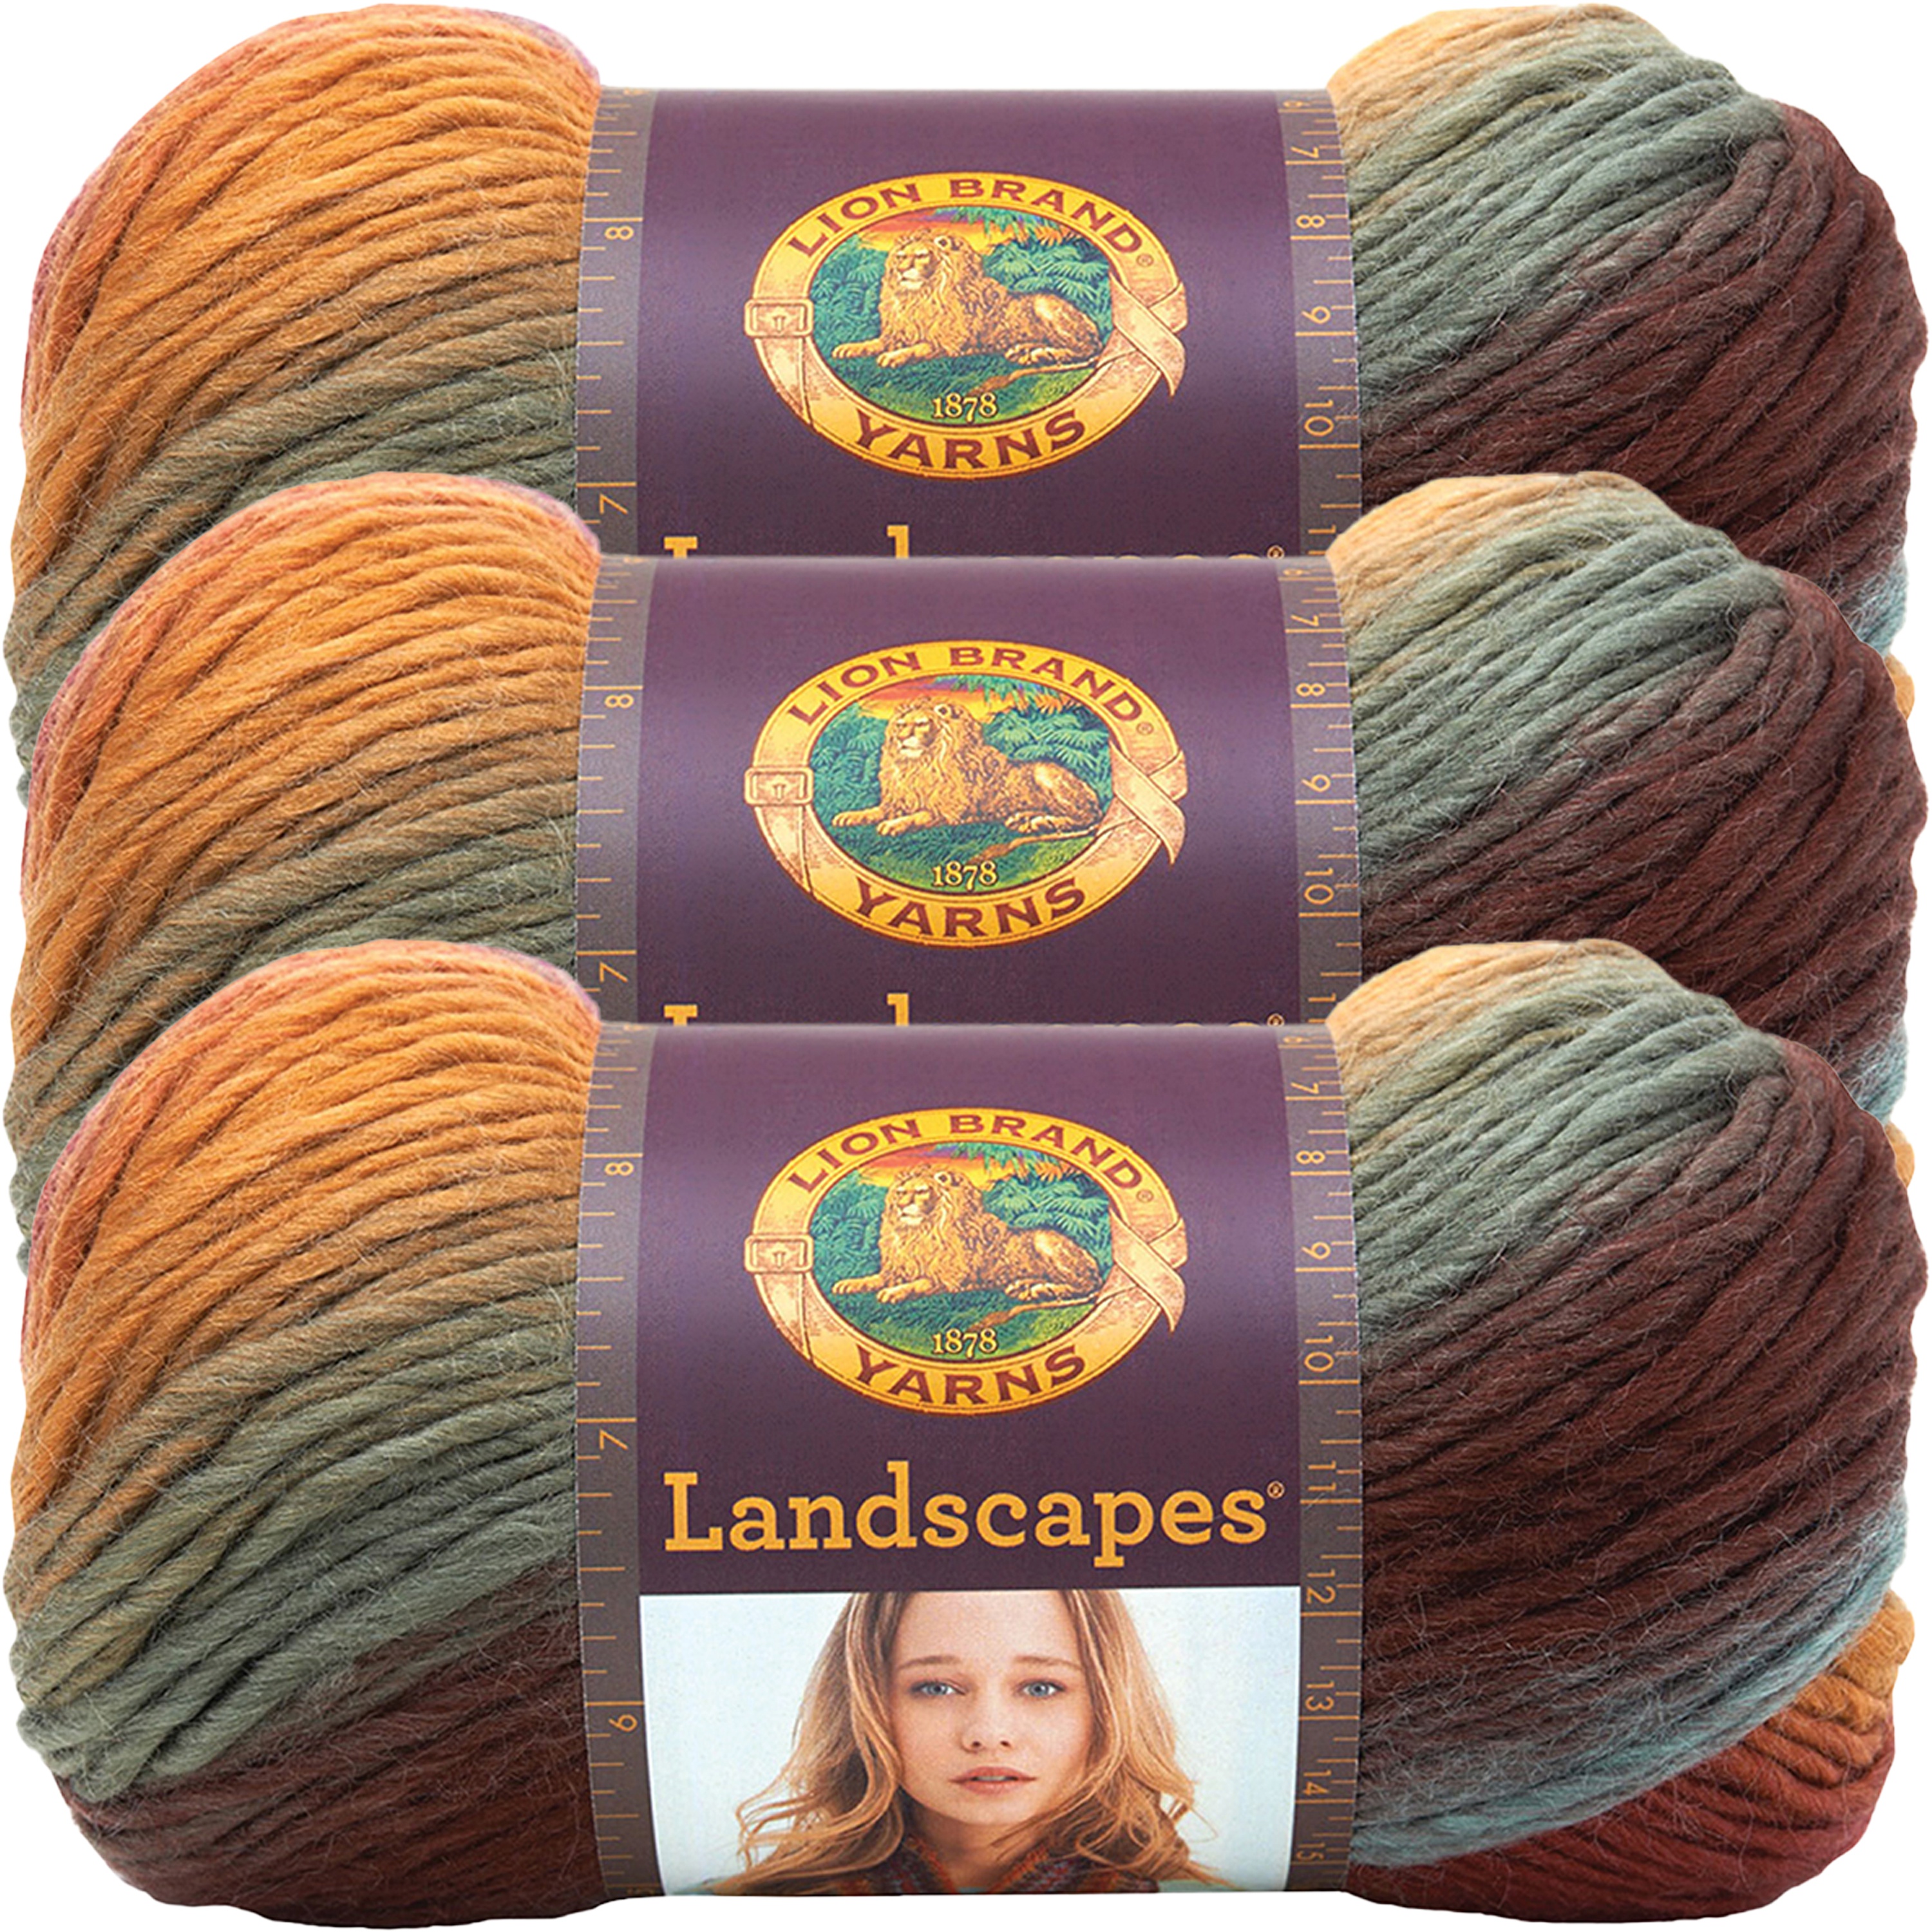 Lion Brand Landscapes Yarn-Desert Spring, Multipack Of 3 